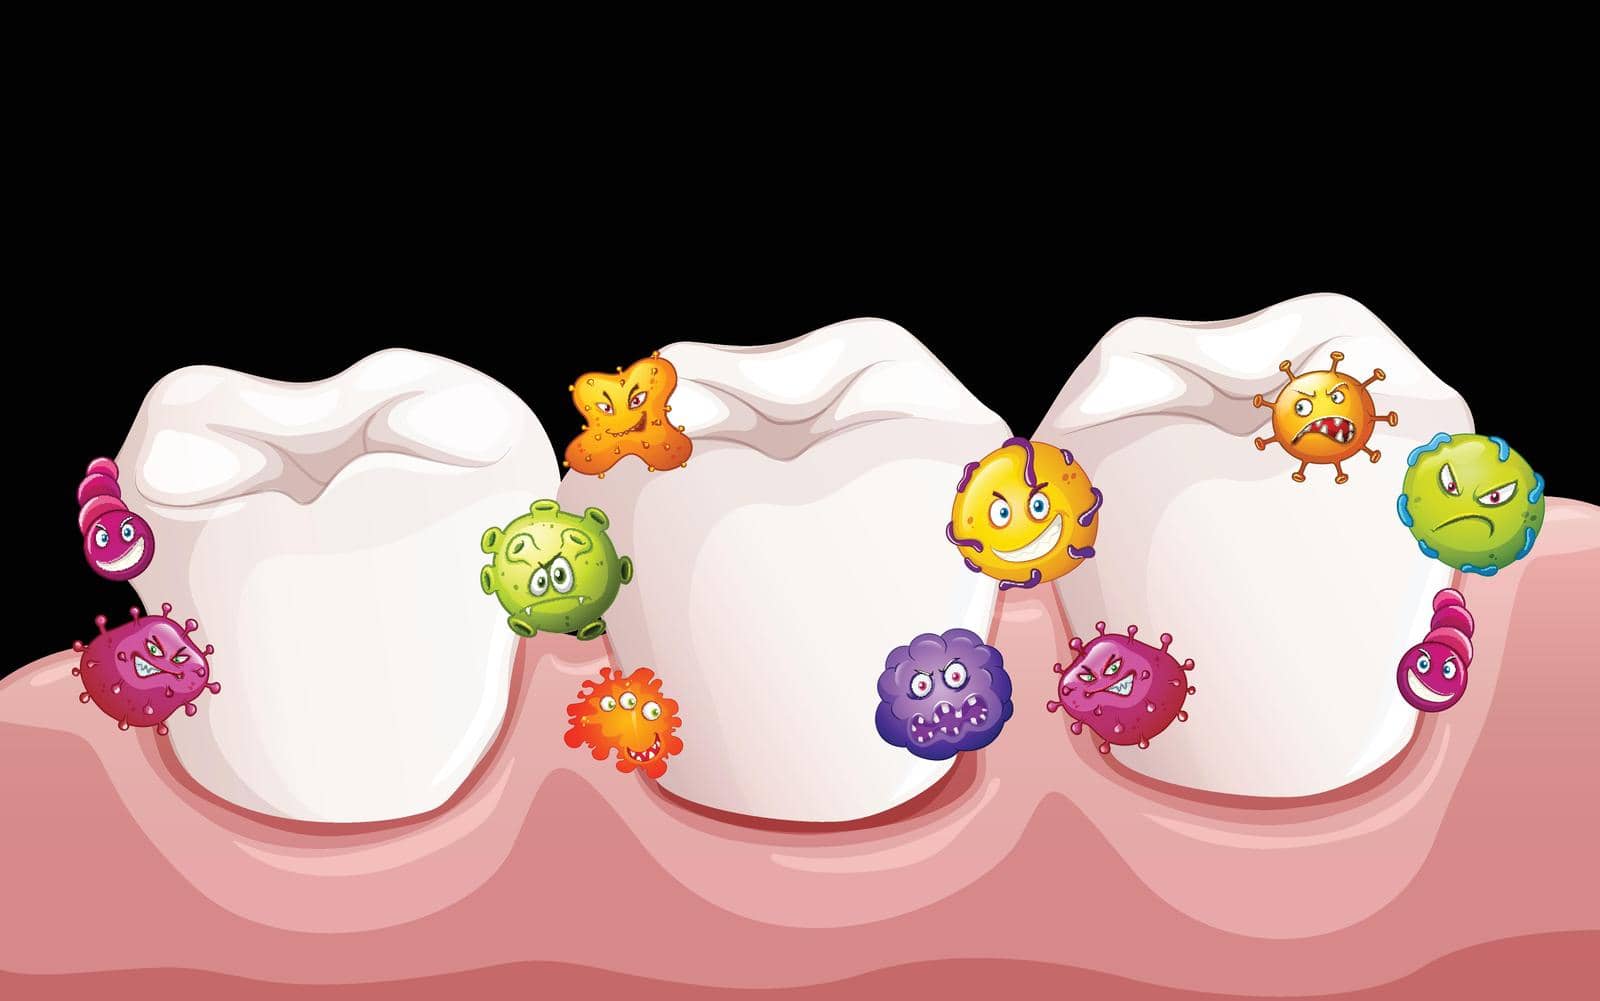 Bacteria in human teeth by iimages